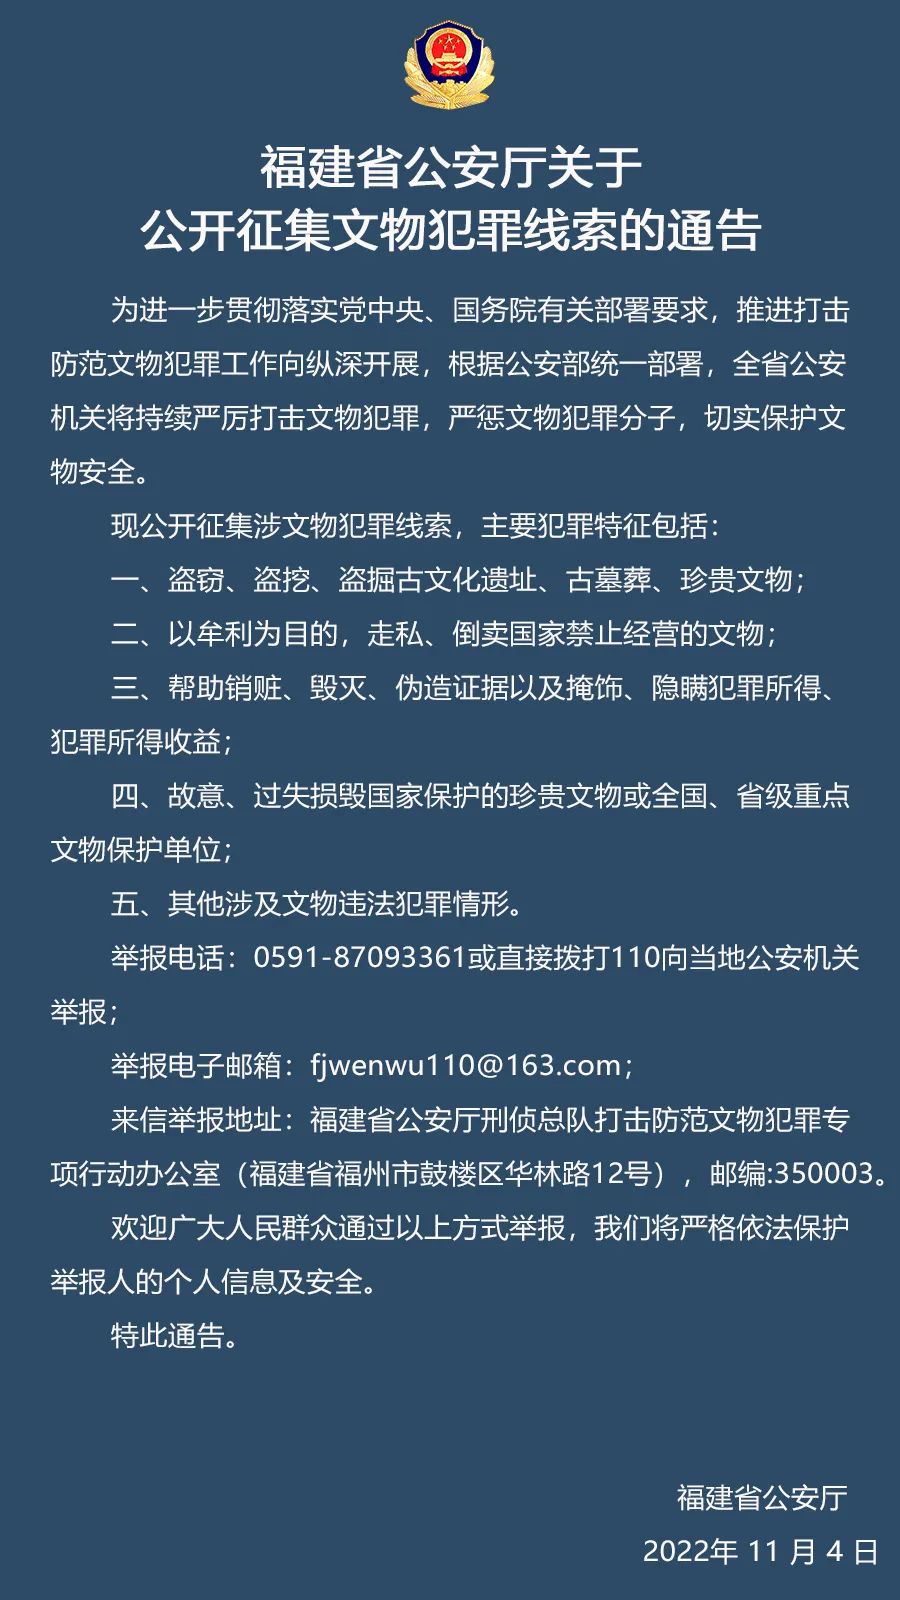 福建省公安厅关于公开征集文物犯罪线索的通告